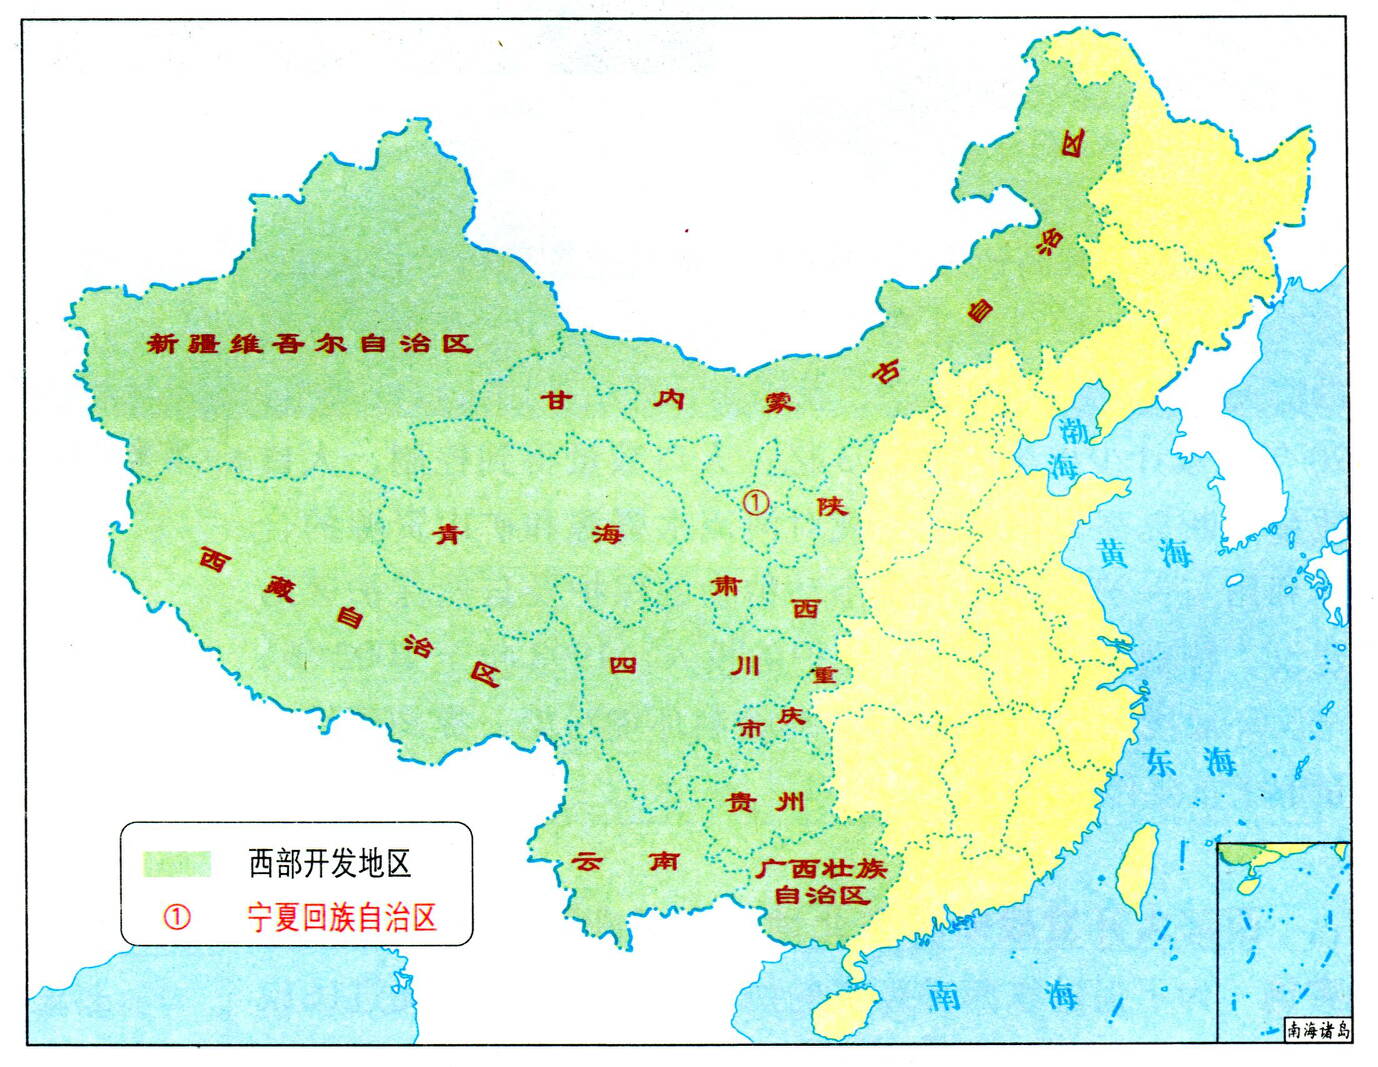 中国西部地区示意图图片